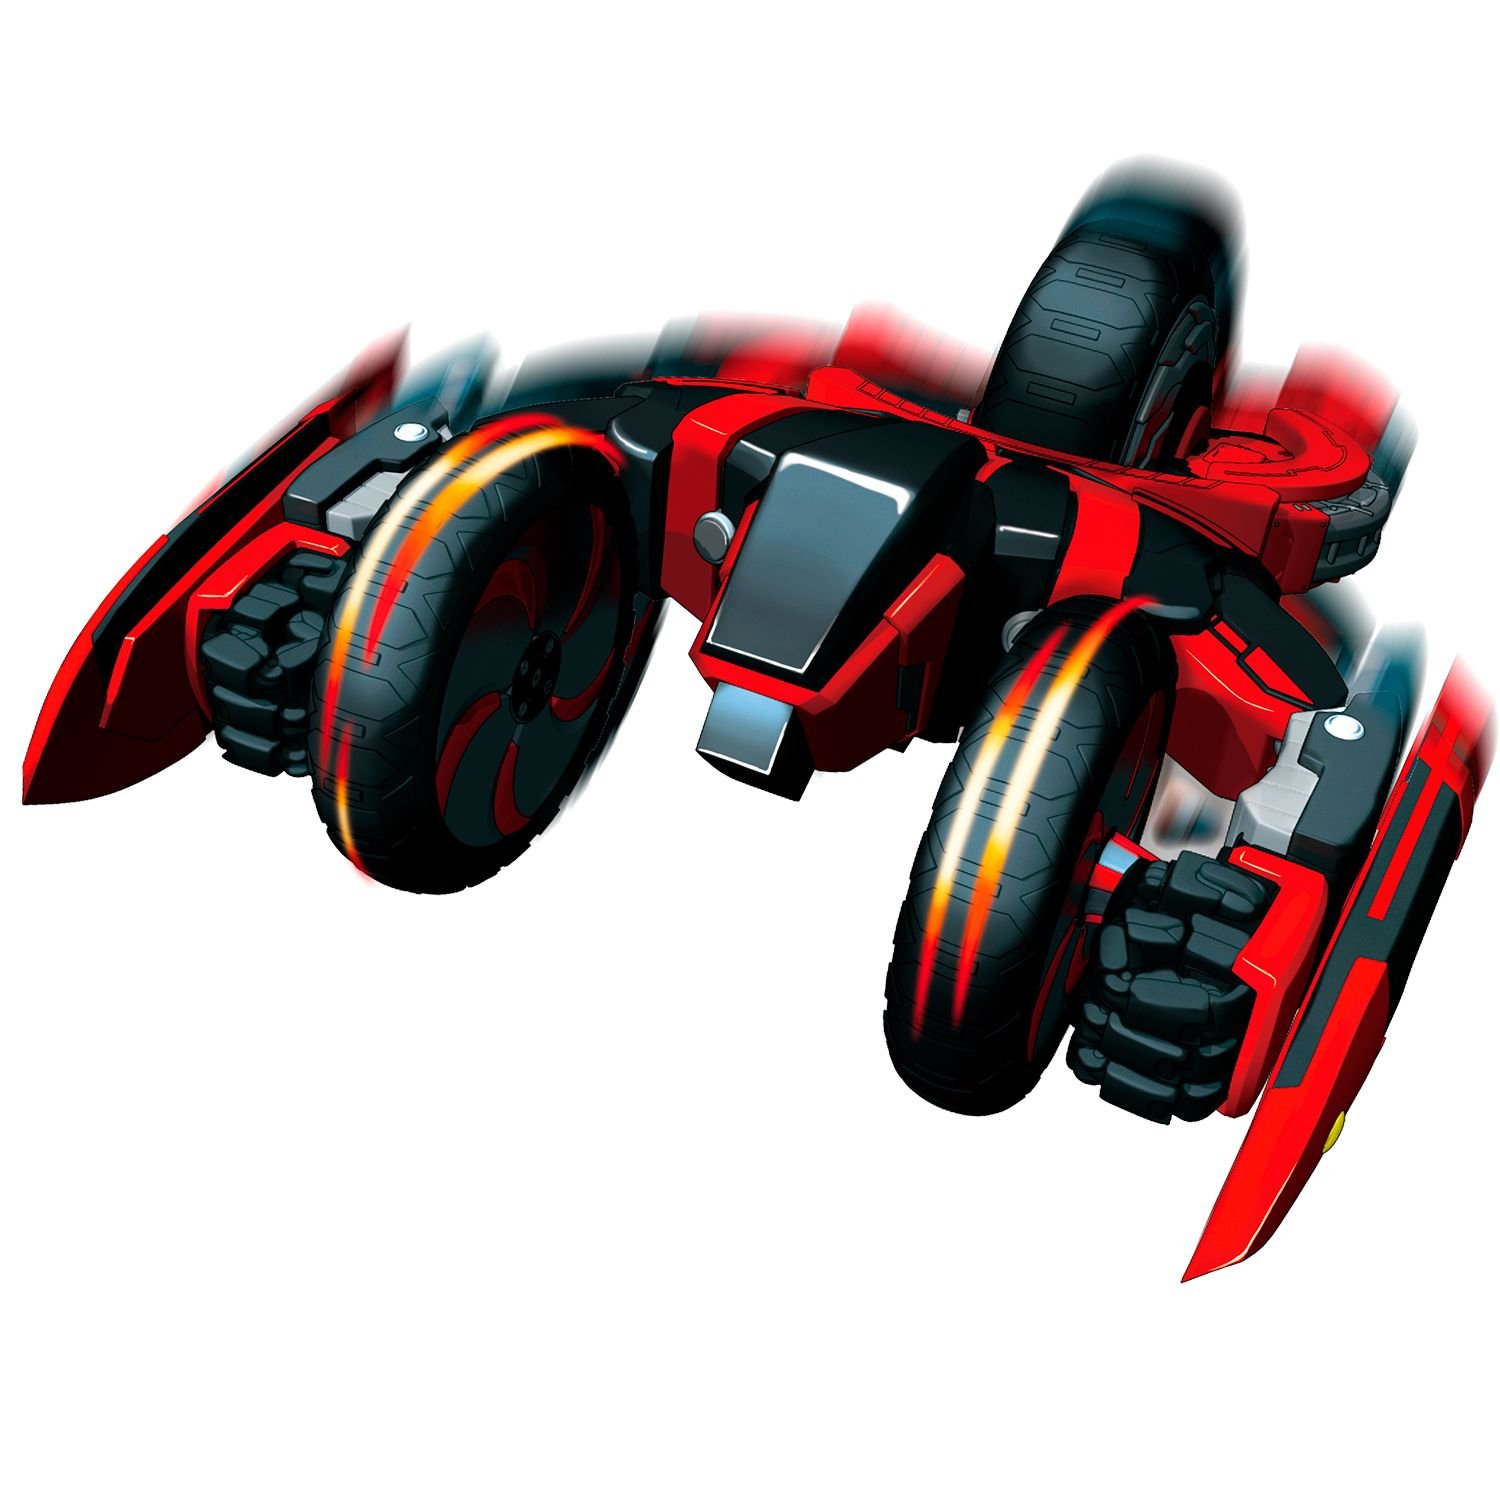 Игровой набор волчков-трансформеров 2 в 1 Spin Racers – Саблезуб и Хитрец с аксессуарами  